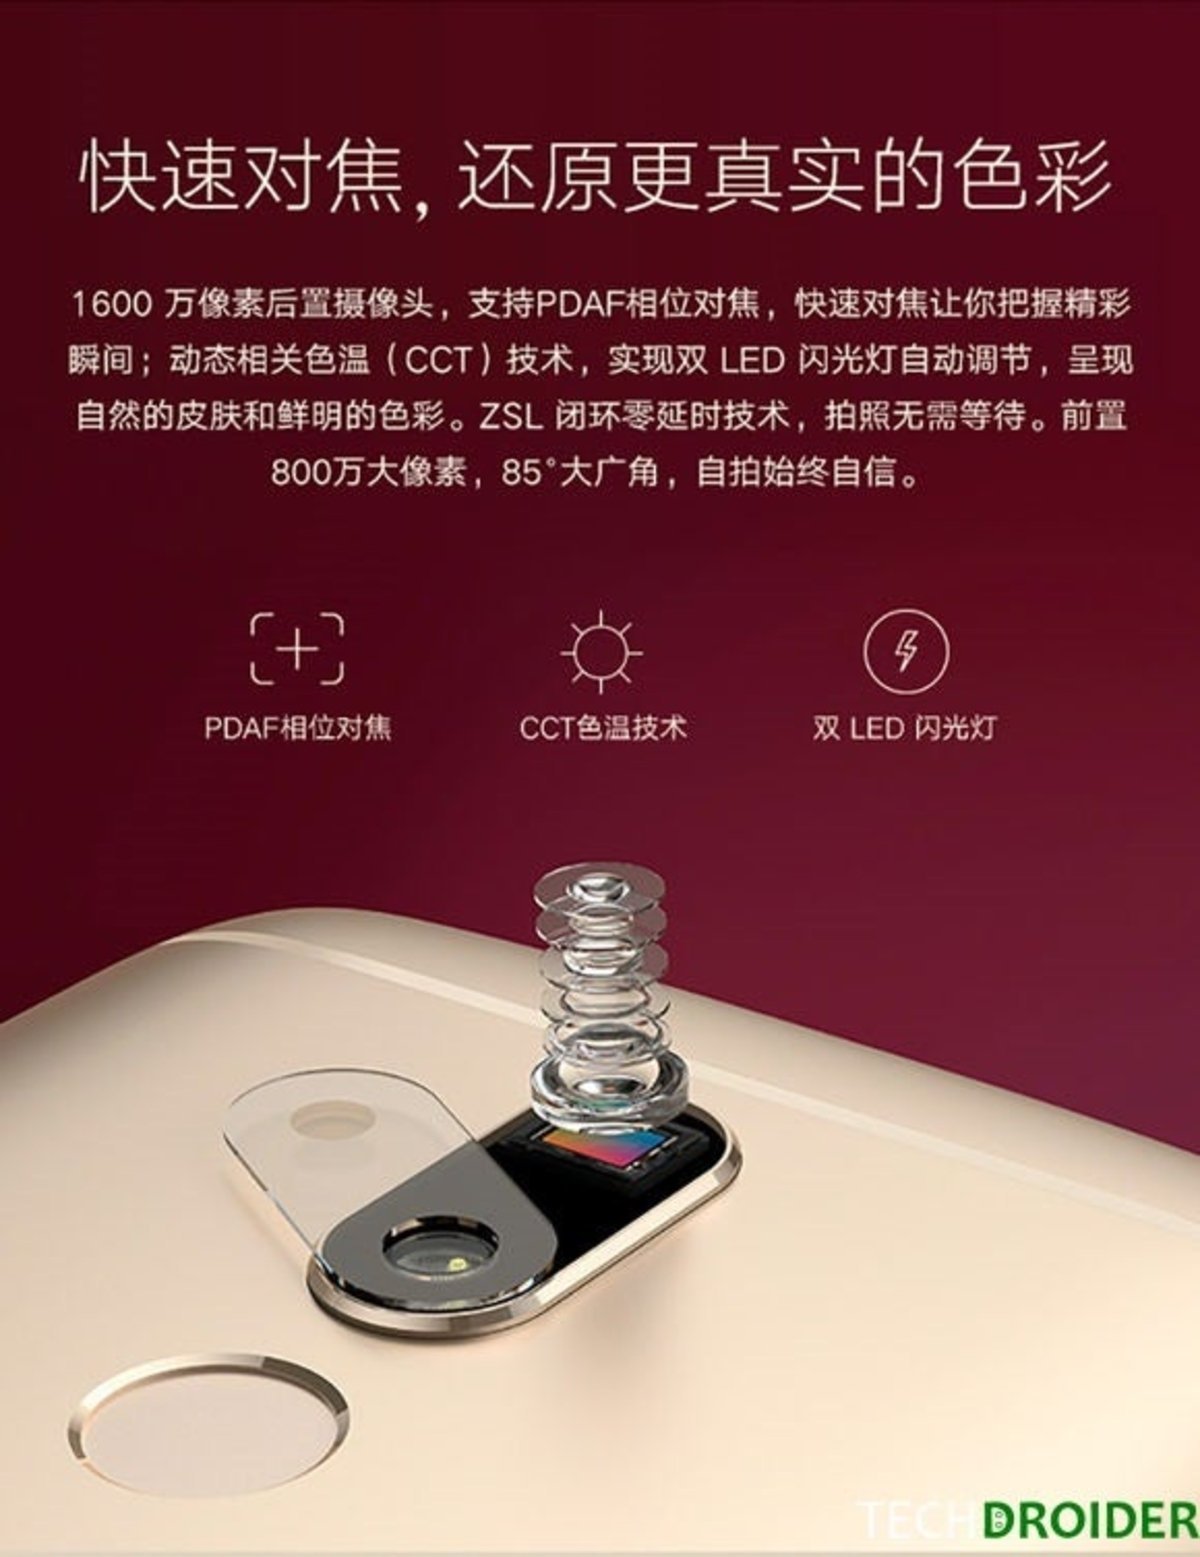 Filtración imagen oficial Moto M - 6